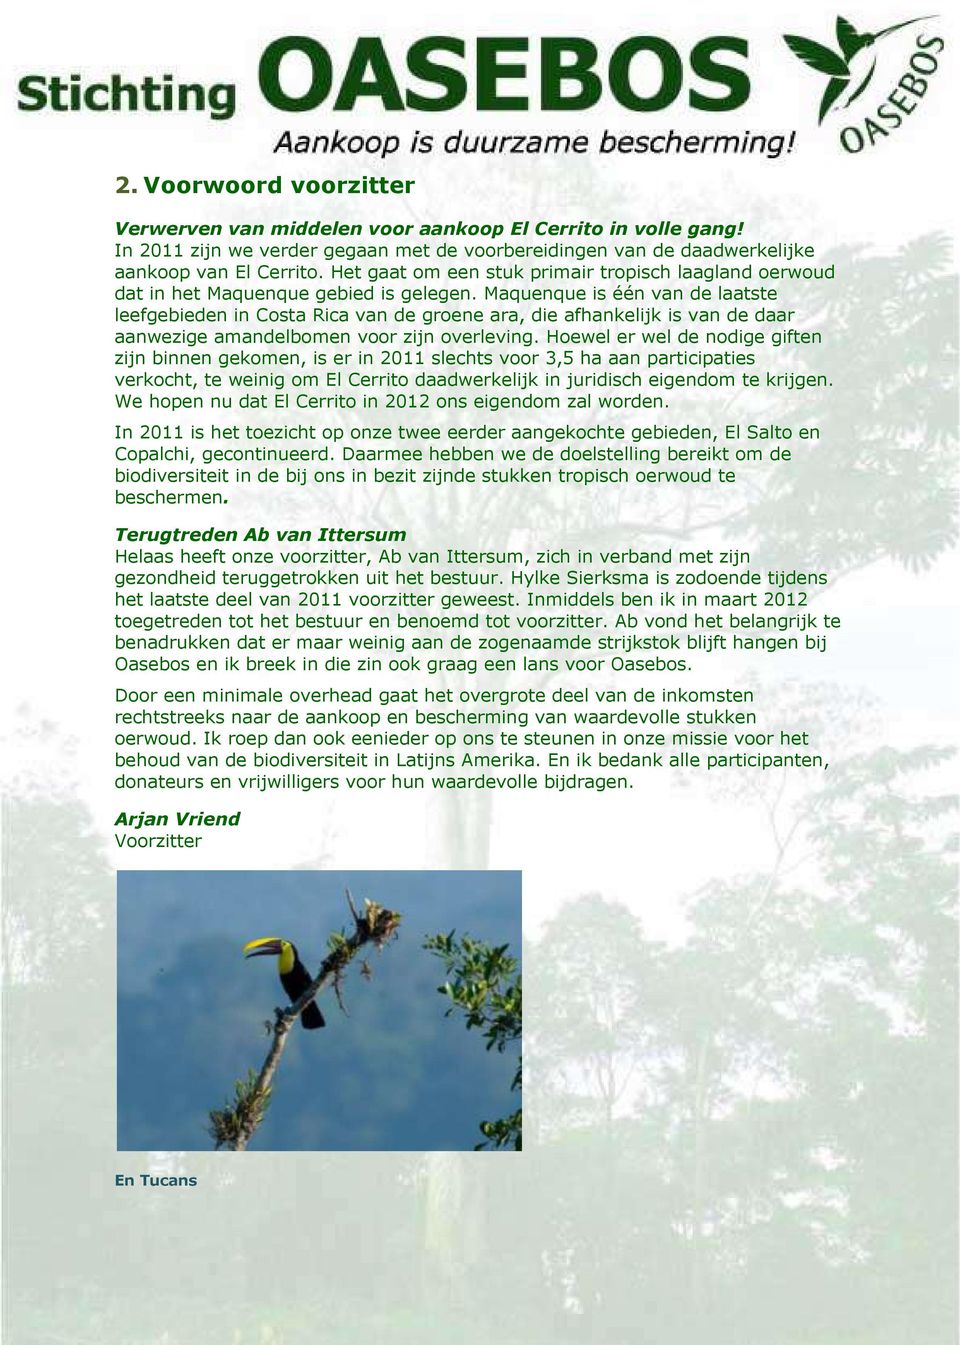 Maquenque is één van de laatste leefgebieden in Costa Rica van de groene ara, die afhankelijk is van de daar aanwezige amandelbomen voor zijn overleving.